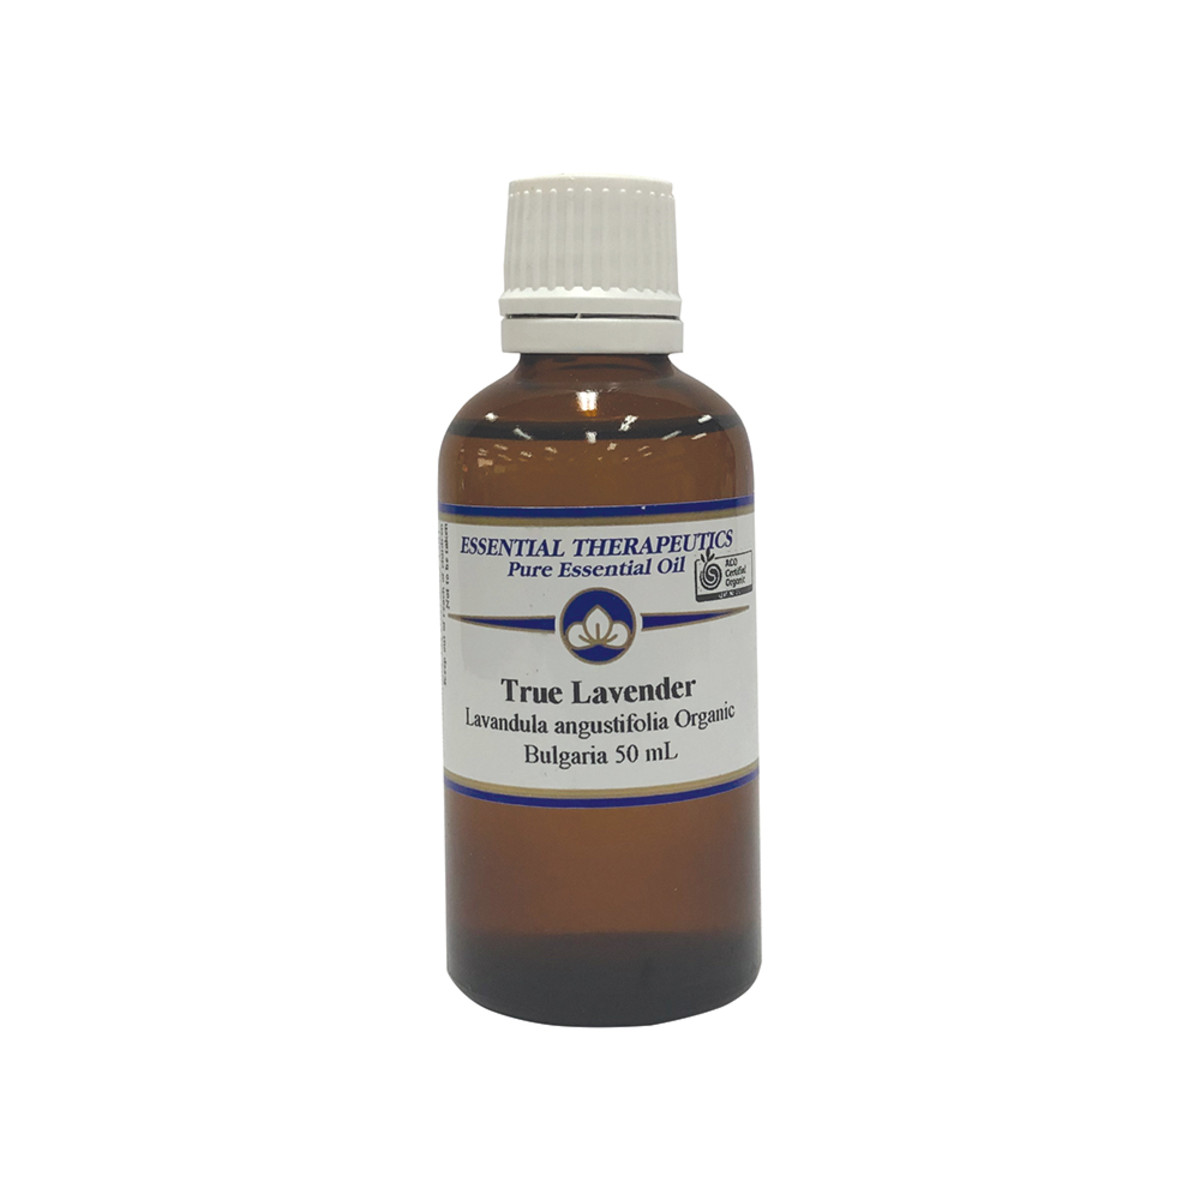 ESSENTIAL THERAPEUTICS - Lavender Essential Oil